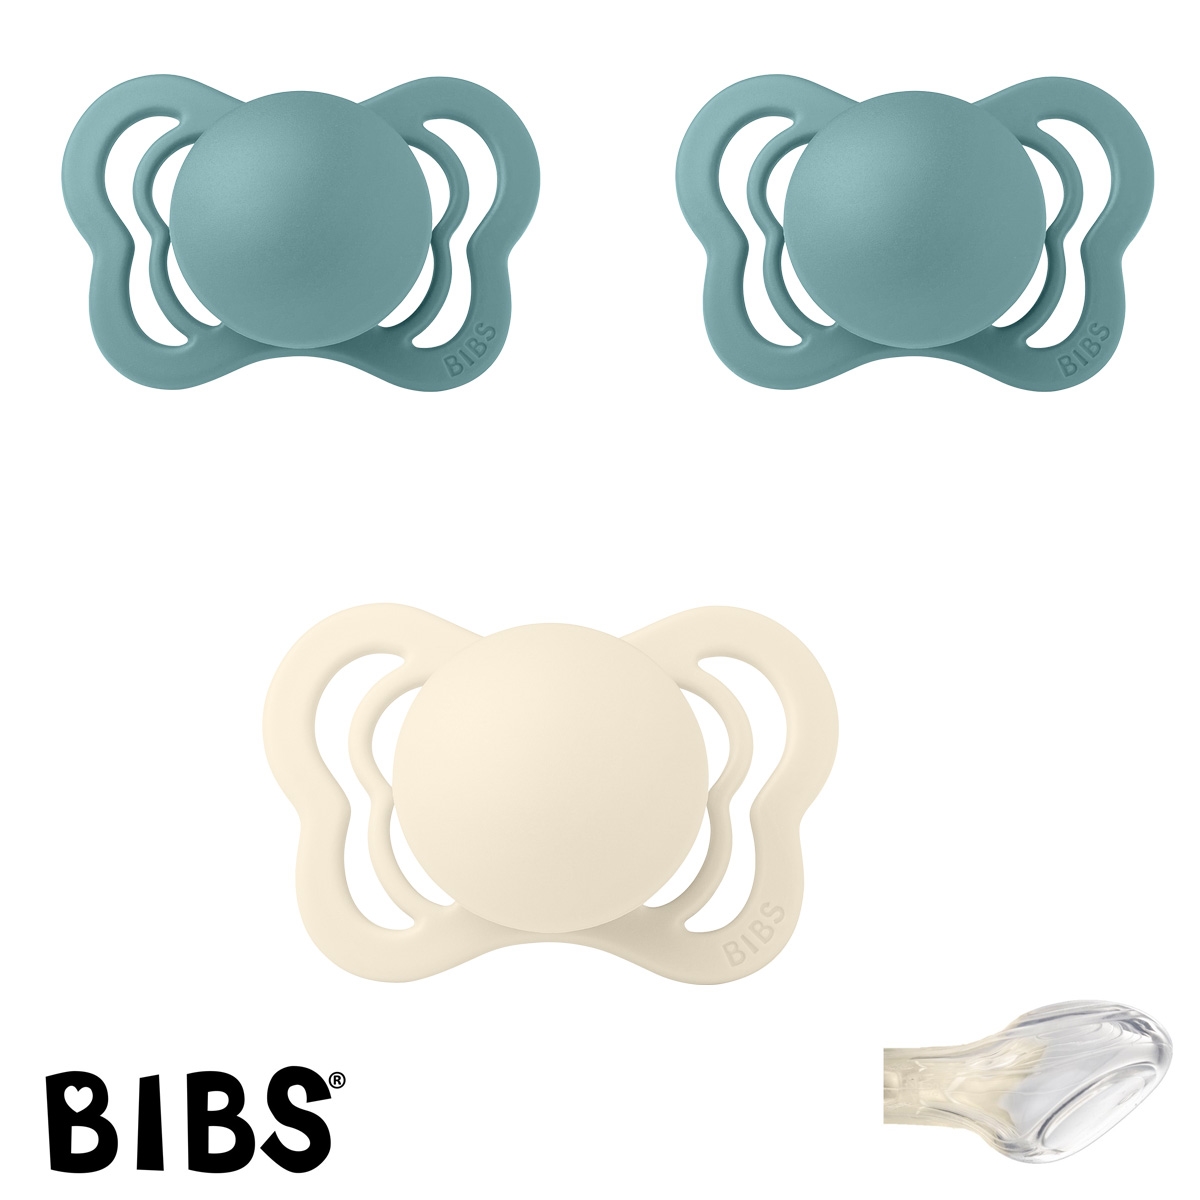 BIBS Couture Sutter med navn str1, 1 Ivory, 2 Island Sea, Anatomisk Silikone, Pakke med 3 sutter